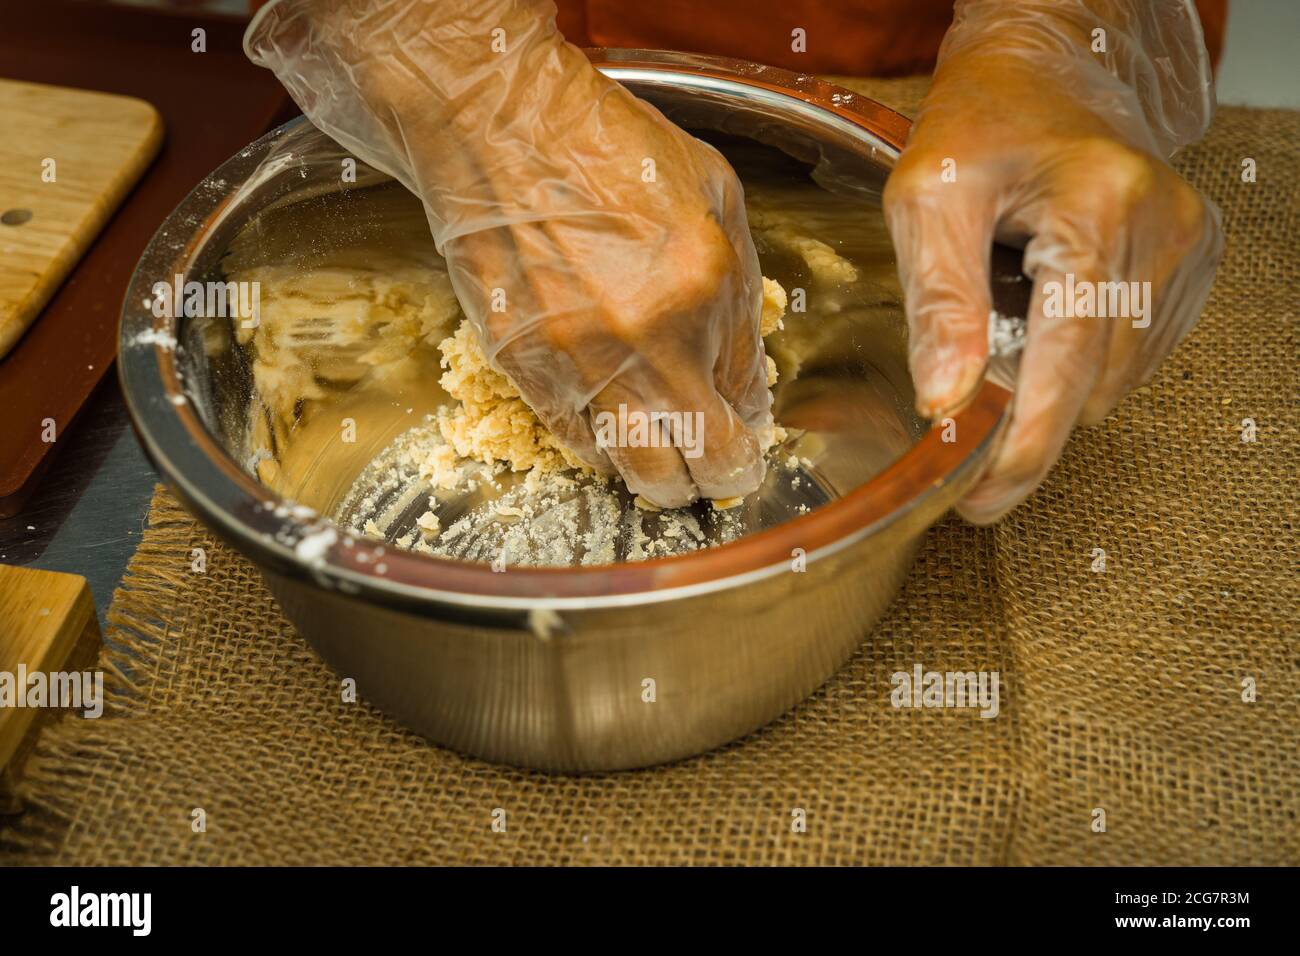 Las manos femeninas hacen masa para la torta de luna, pastelería cantonesa casera de la torta de luna en la bandeja de hornear antes de hornear para el festival tradicional. Viajes, vacaciones, fo Foto de stock